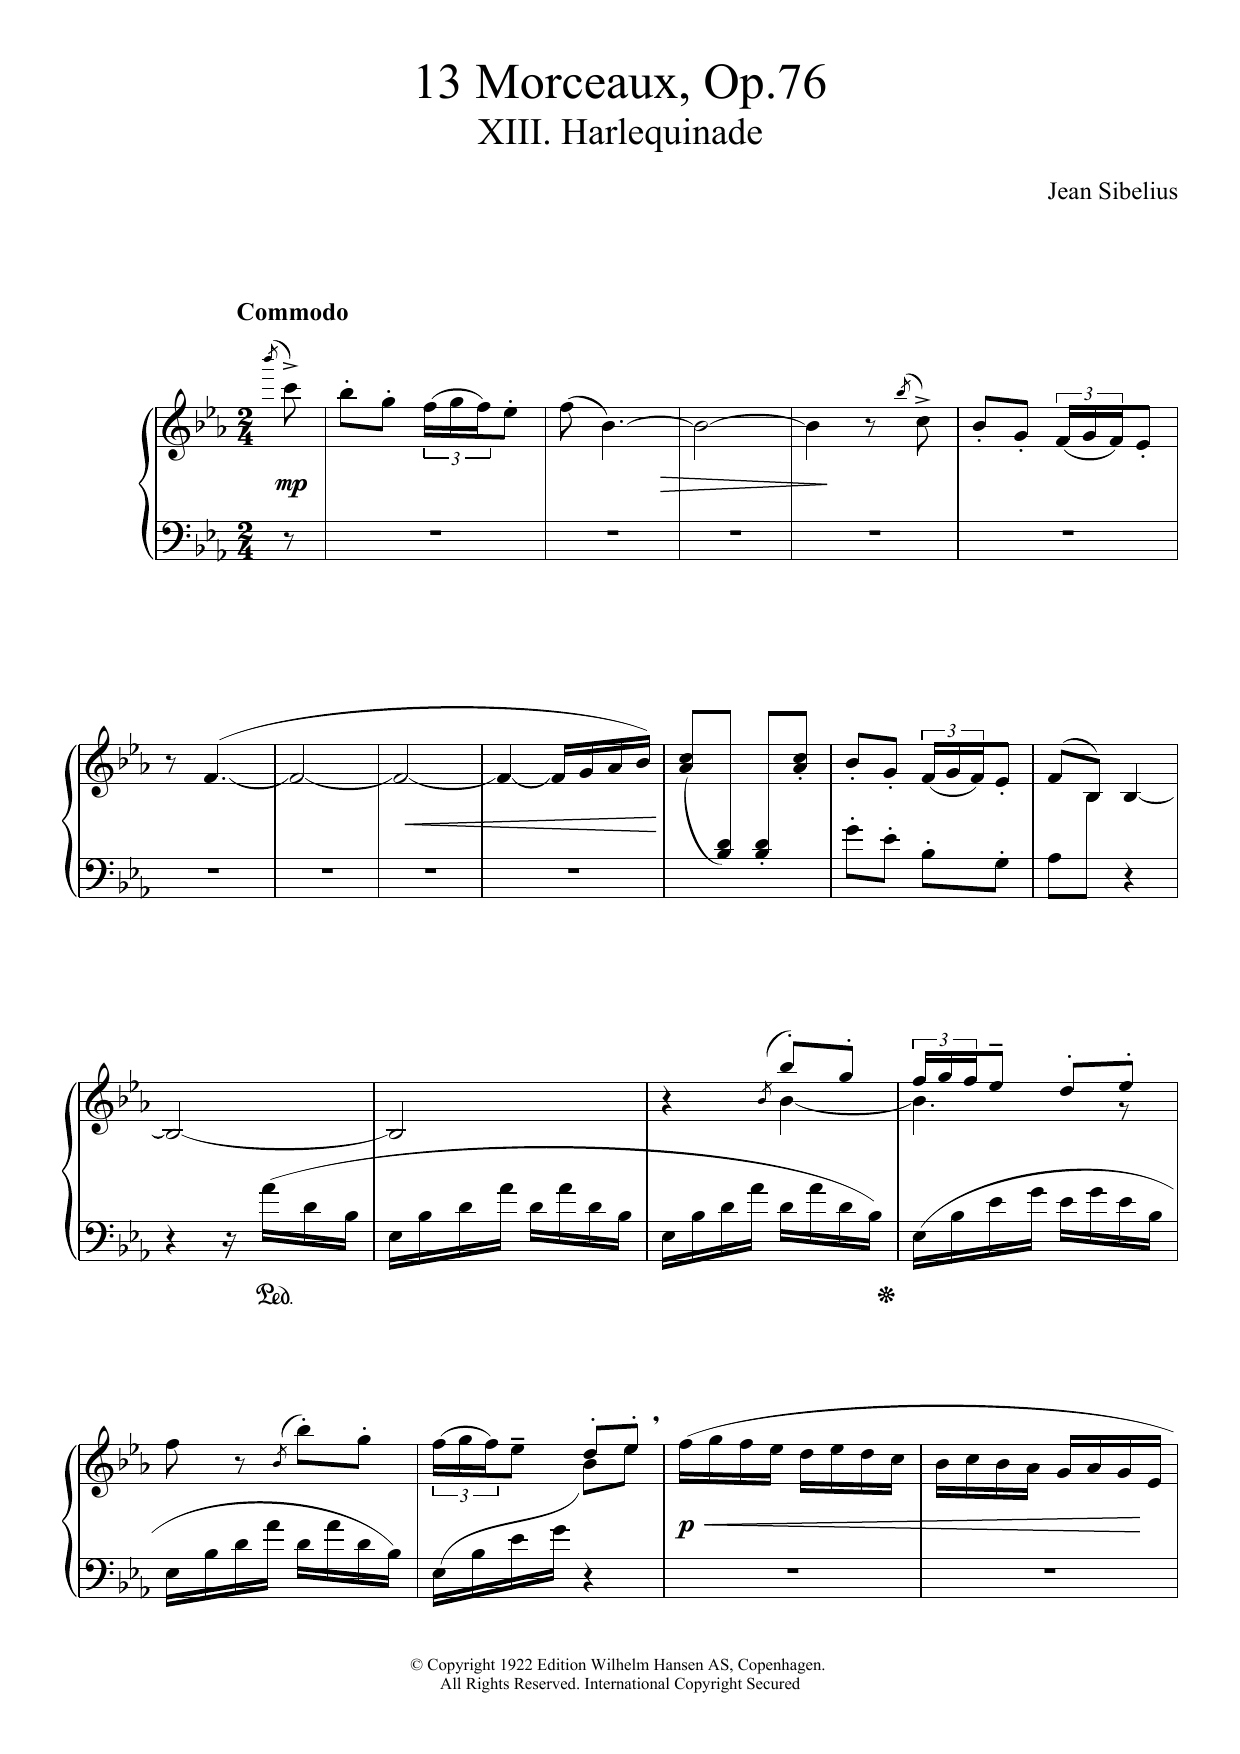 Download Jean Sibelius 13 Morceaux, Op.76 - XIII. Harlequinade Sheet Music